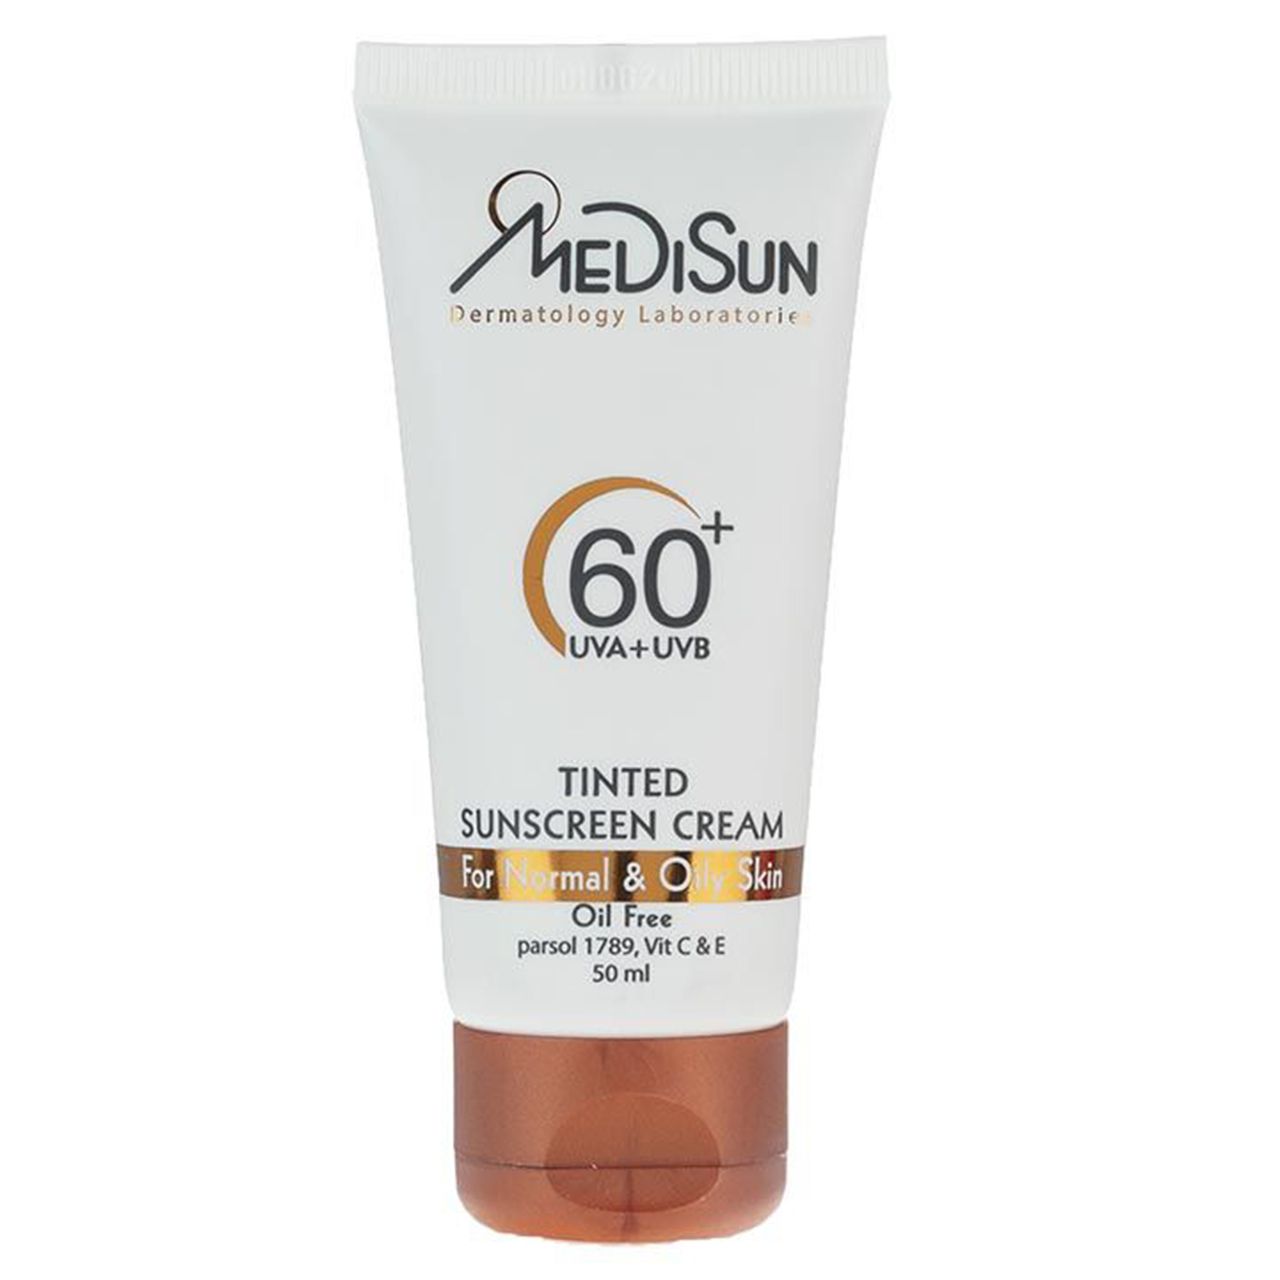 کرم ضد آفتاب رنگی  مدیسان مدل  Tinted SPF 60 مناسب پوست های چرب و معمولی حجم 50 میلی لیتر     -  - 1